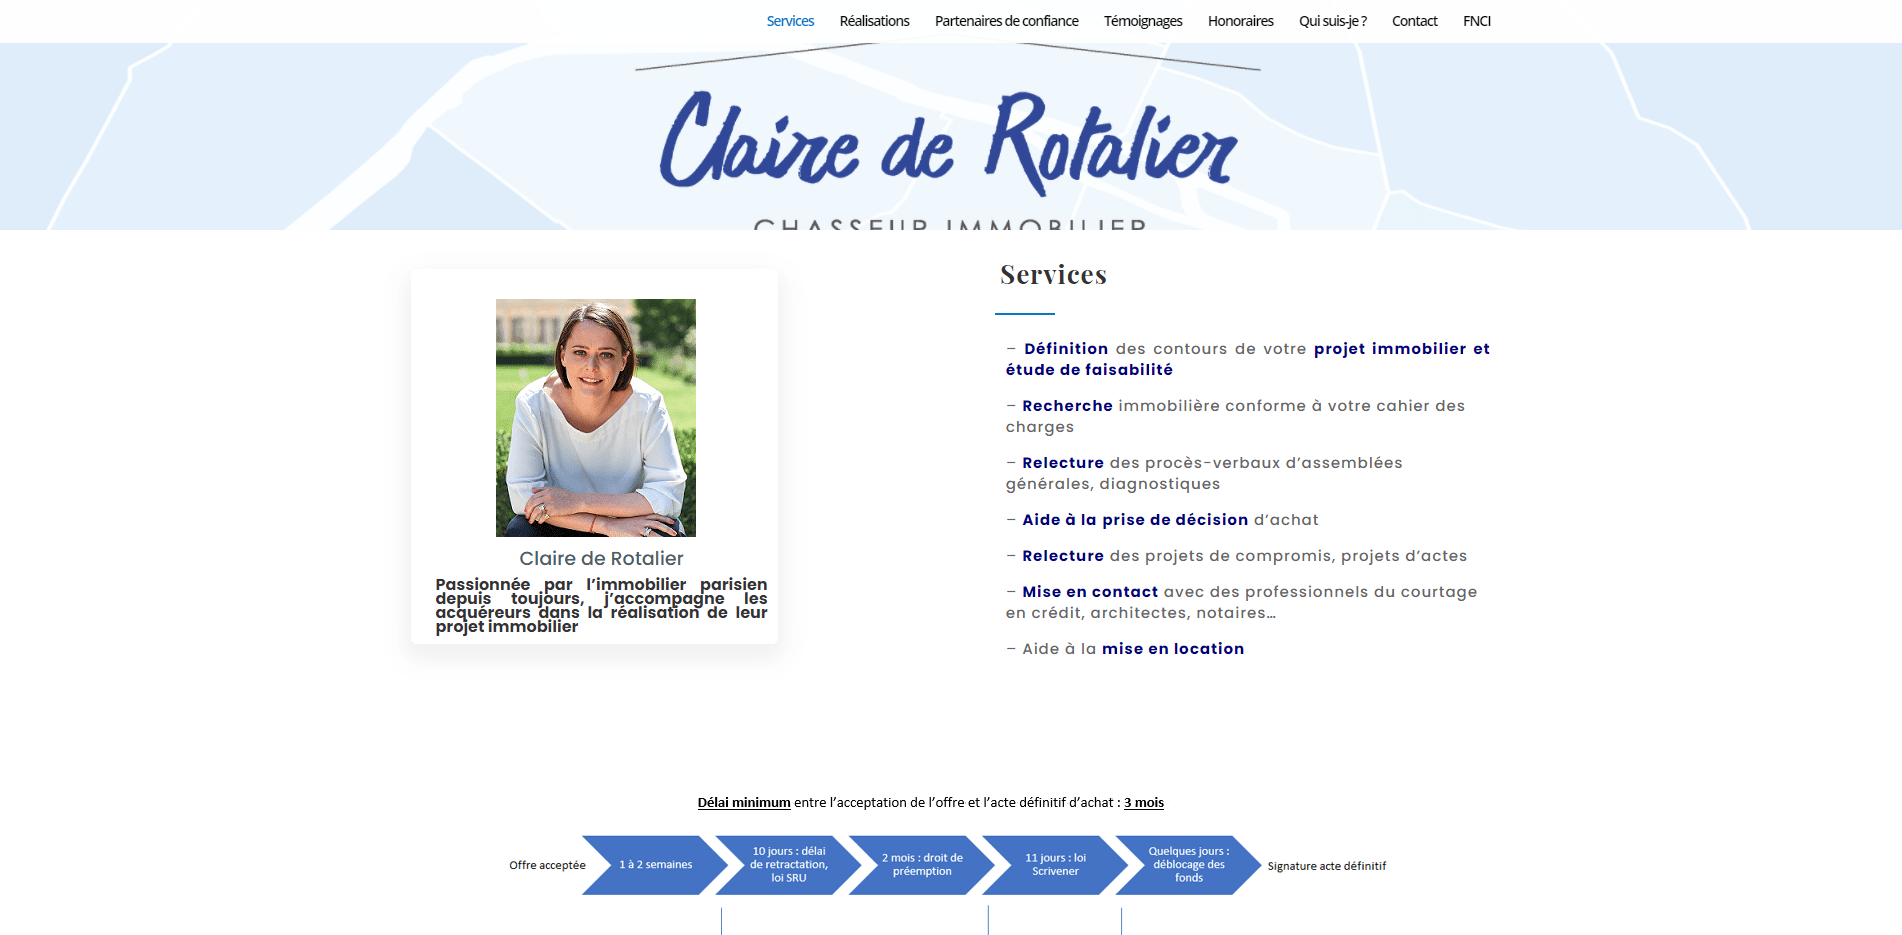 Claire de Rotalier